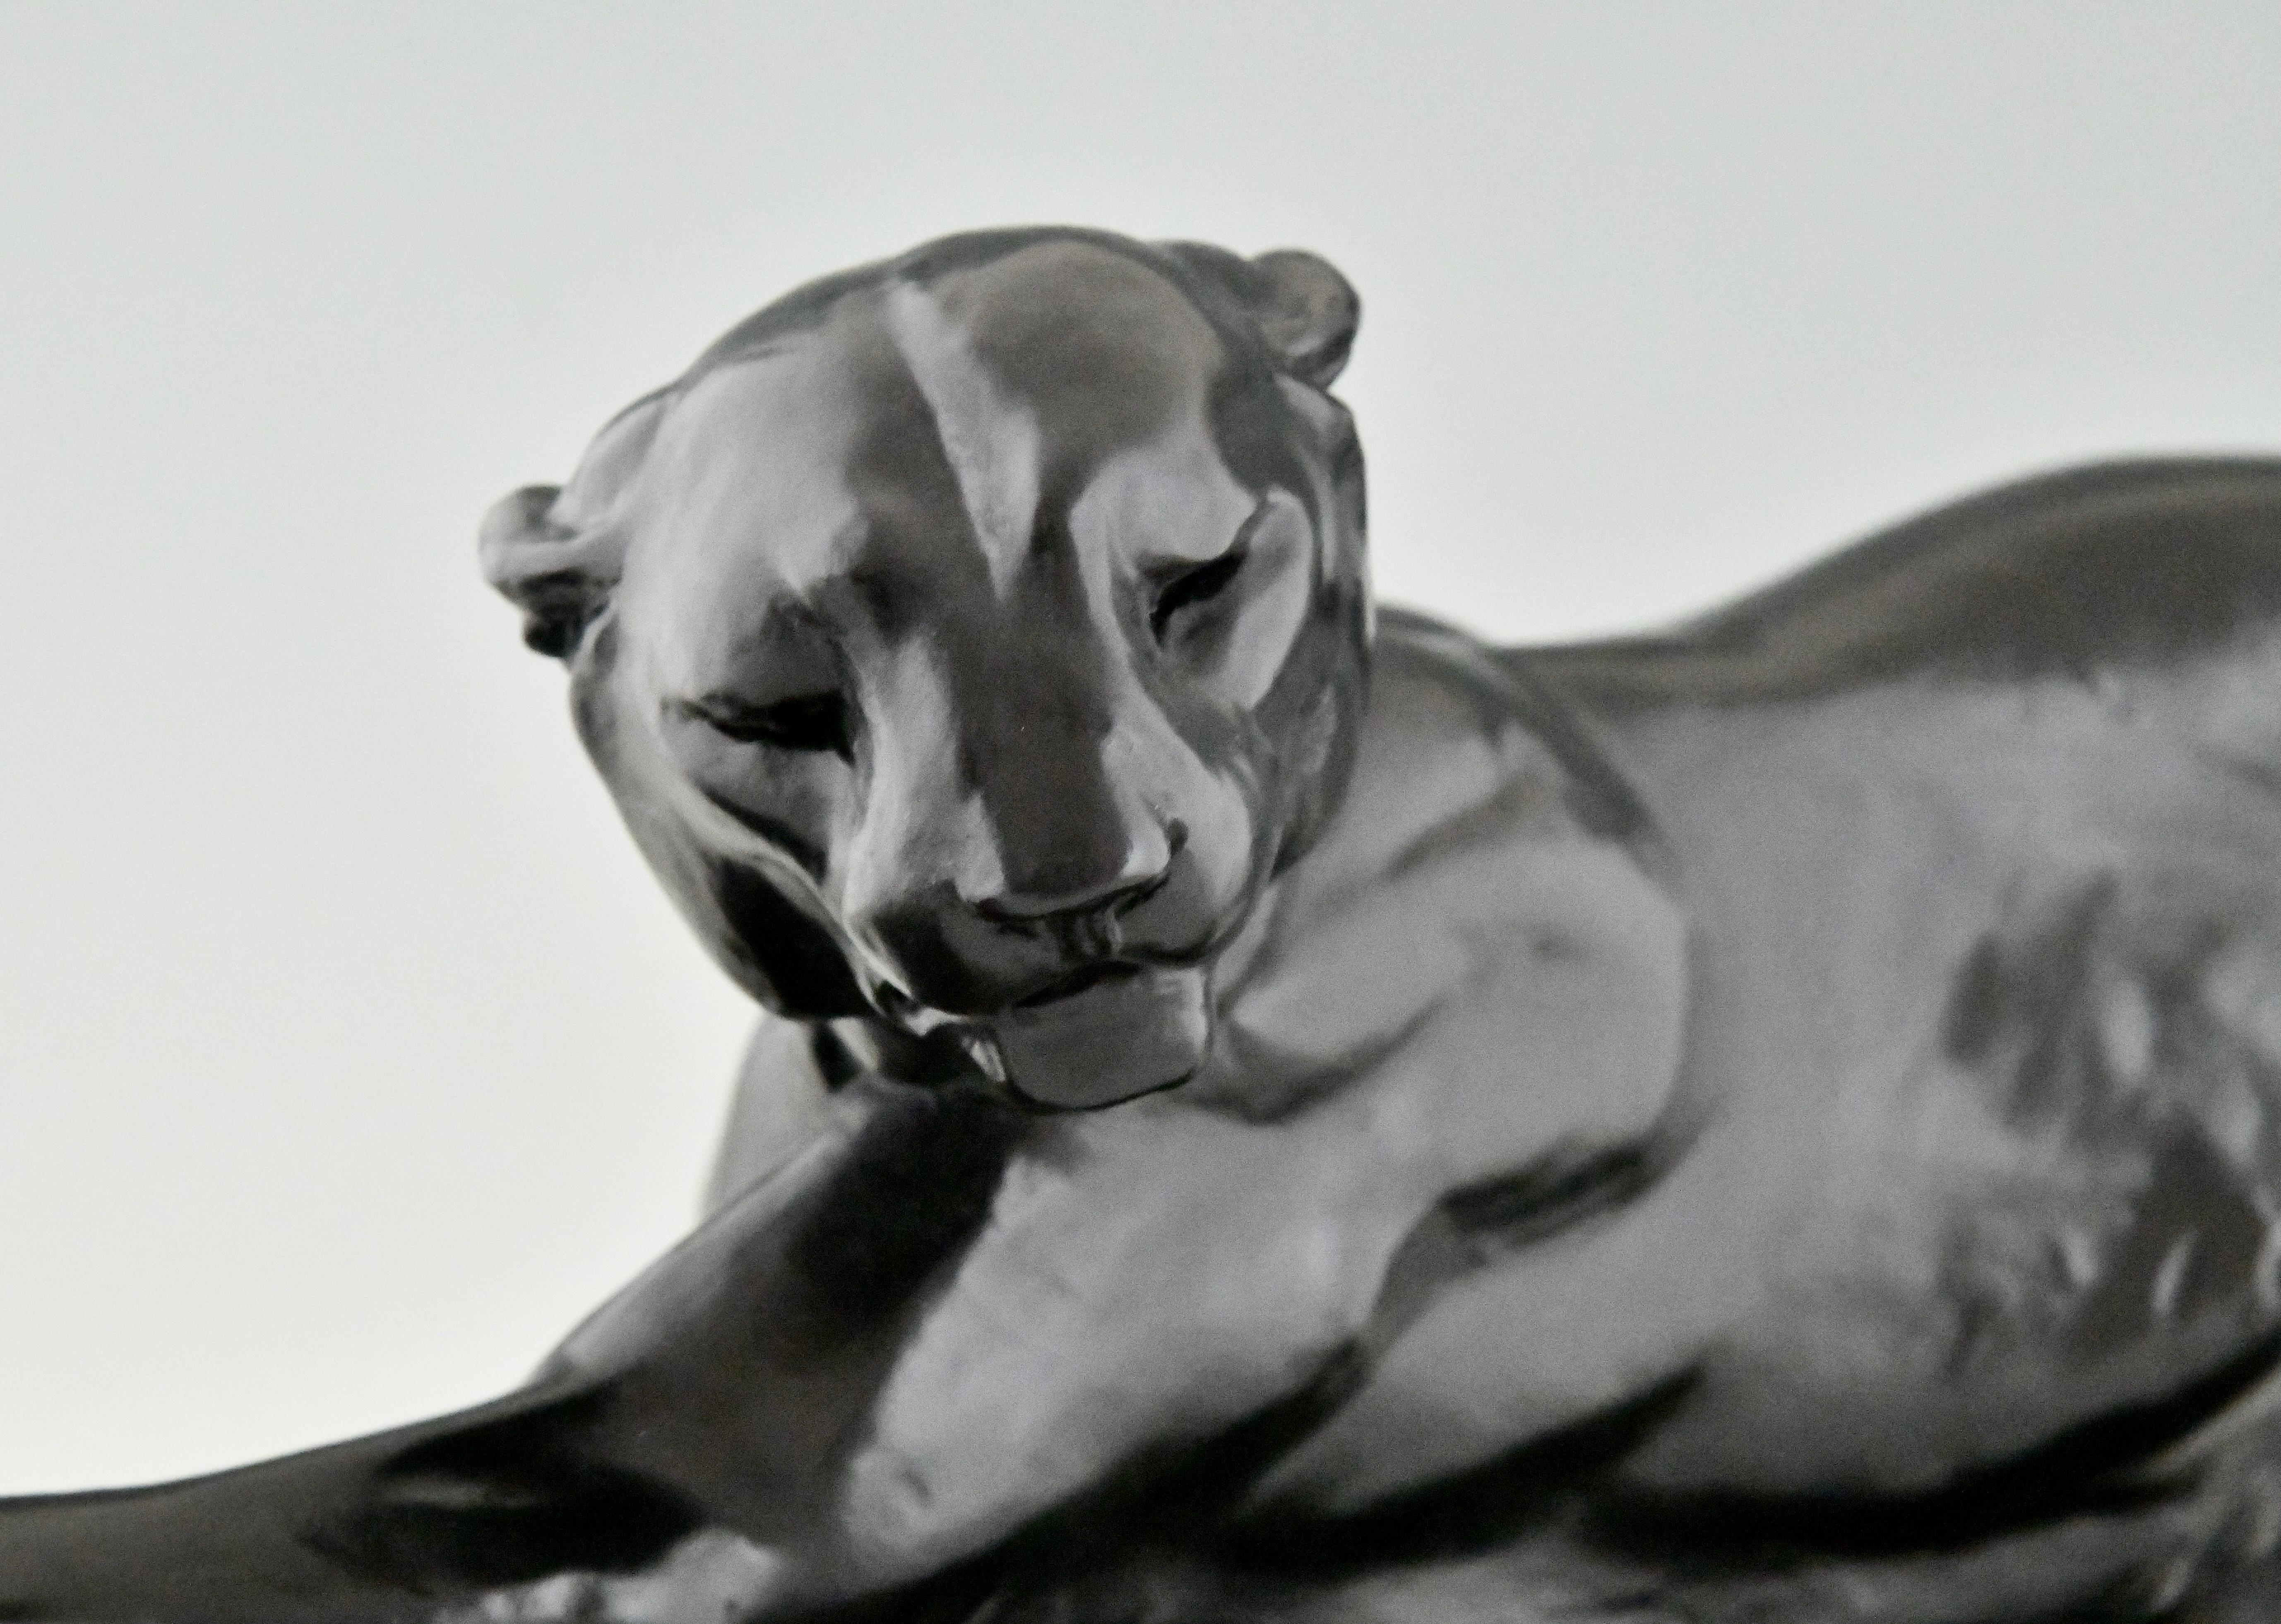 Metal Art Deco panther sculpture by Plagnet, France 1930.